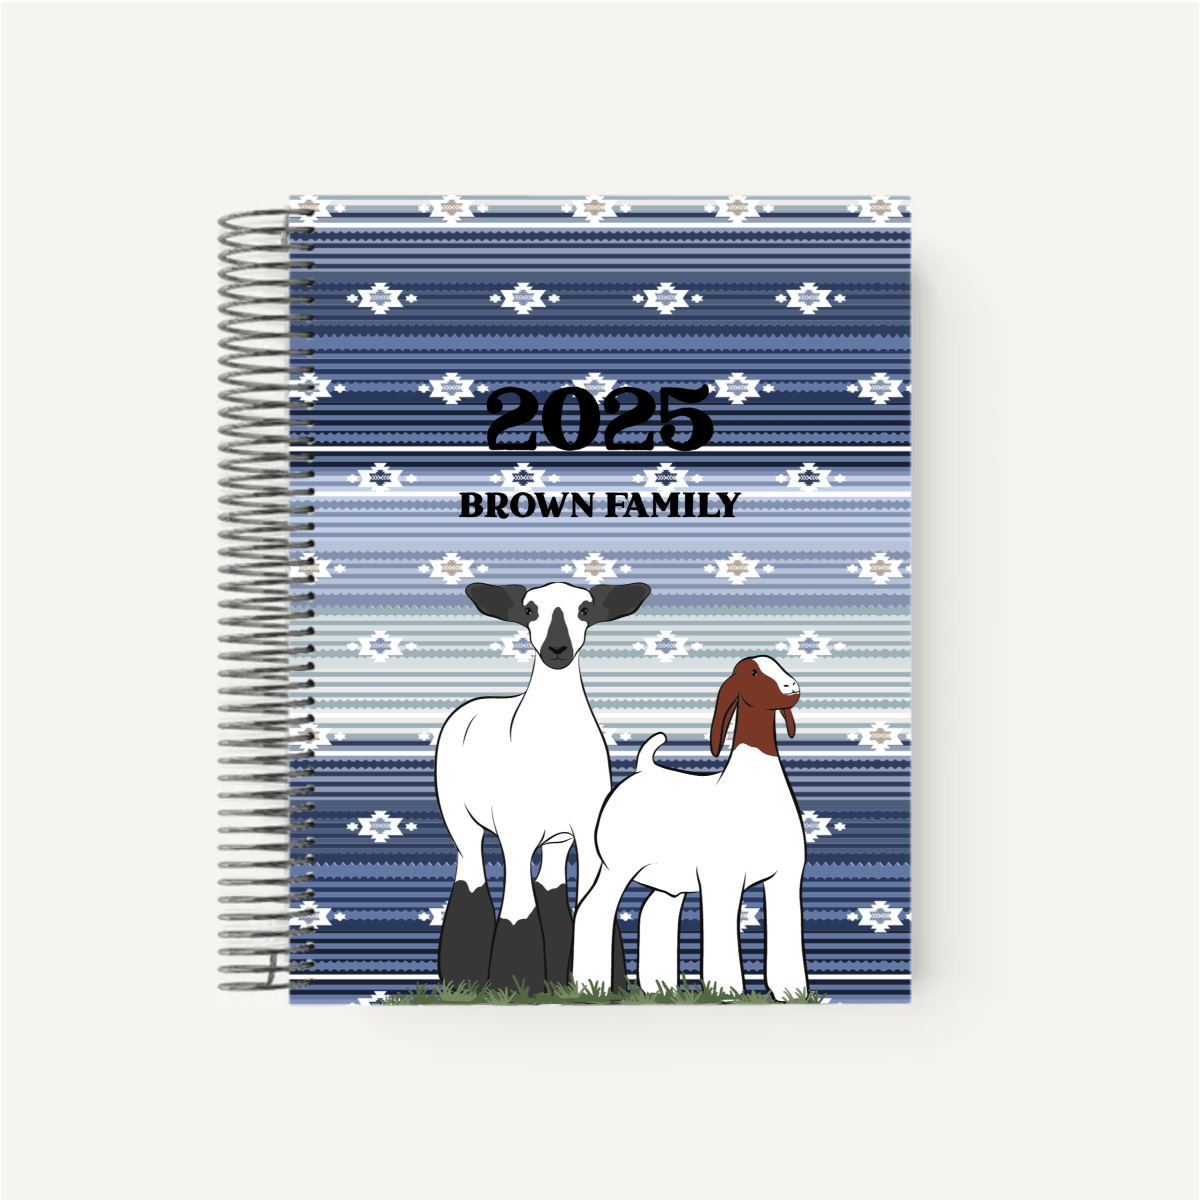 Personalized-Livestock-Animal Record Planner - Serape Cover